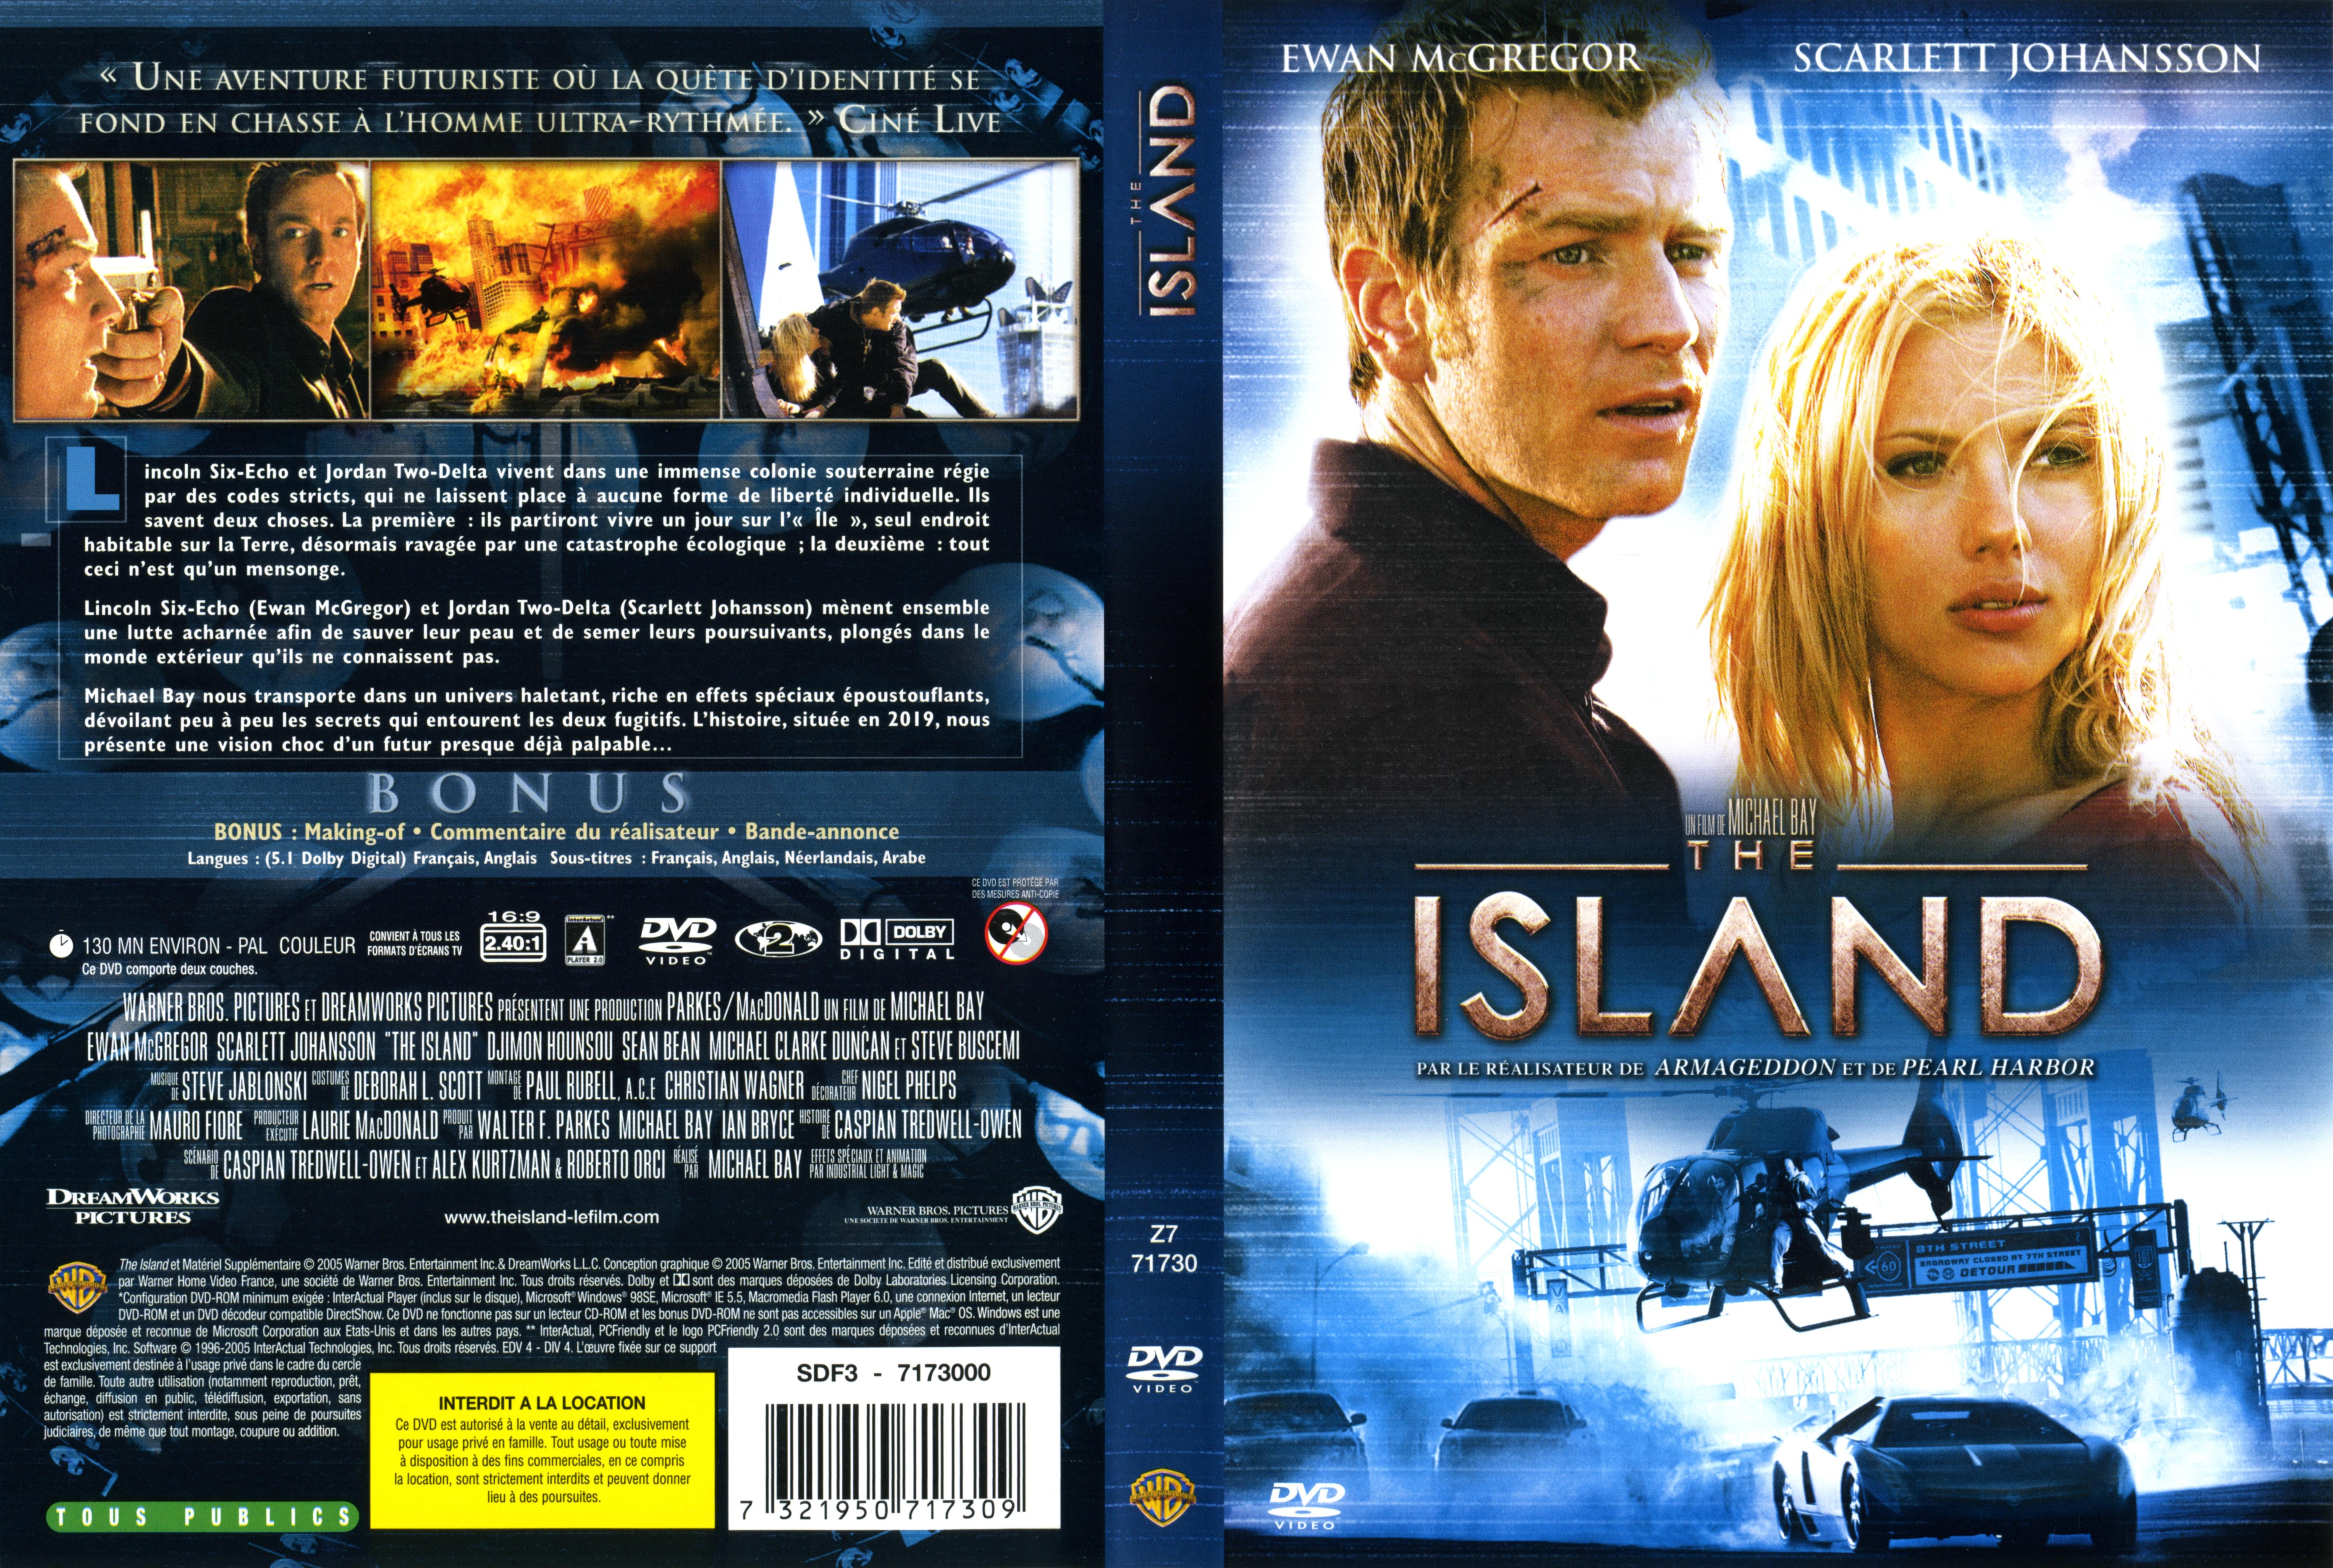 Jaquette DVD de The island Cinéma Passion